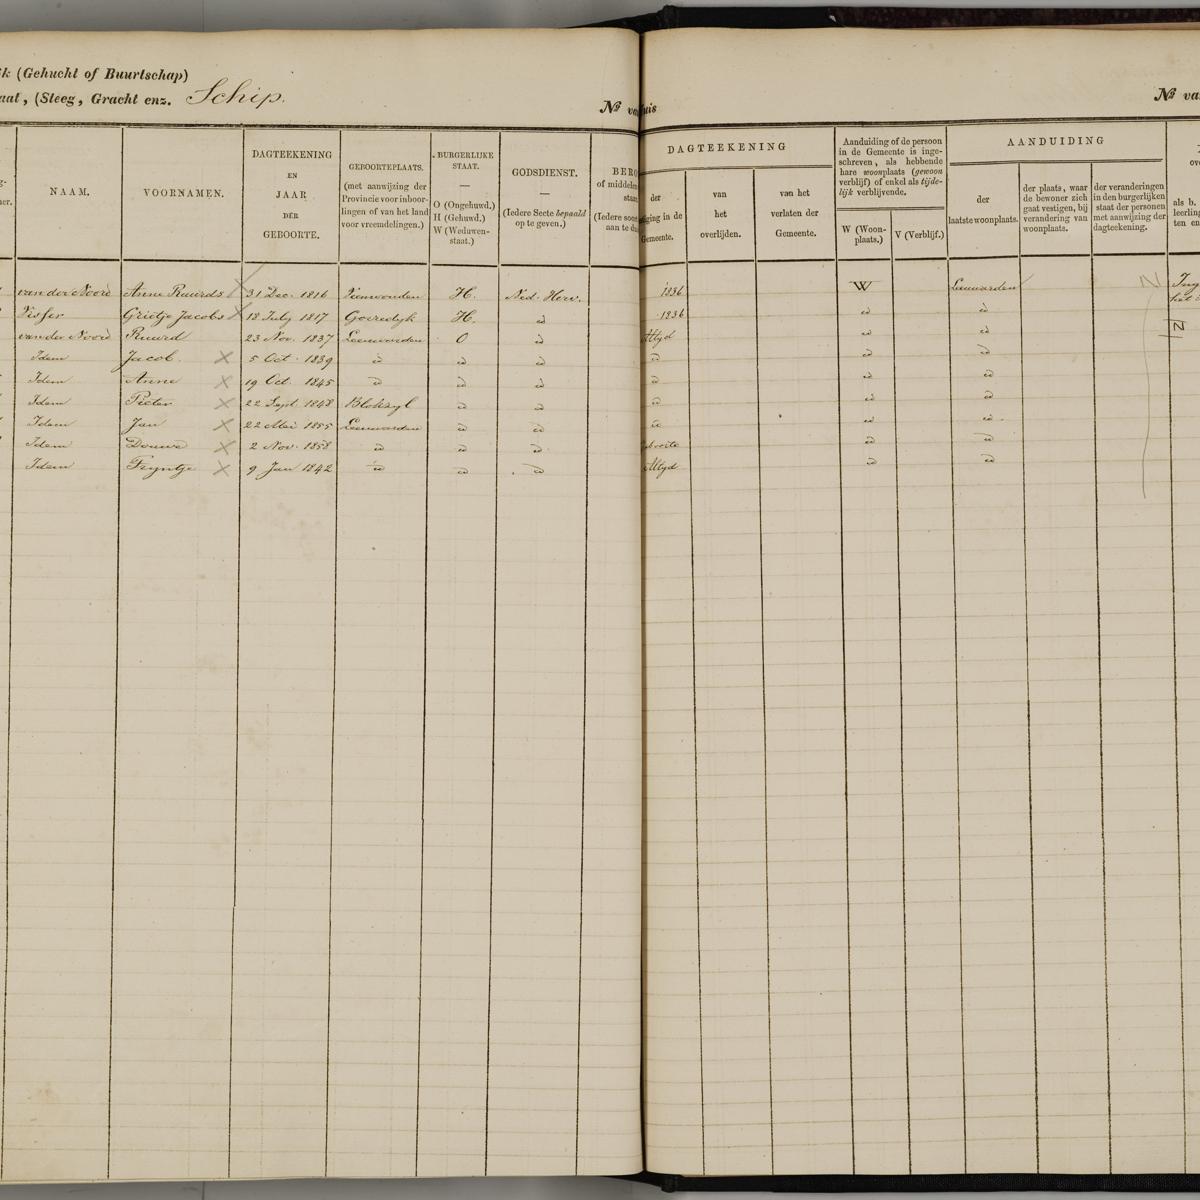 Population registry, Leeuwarden, 1848-1859, sheet 199